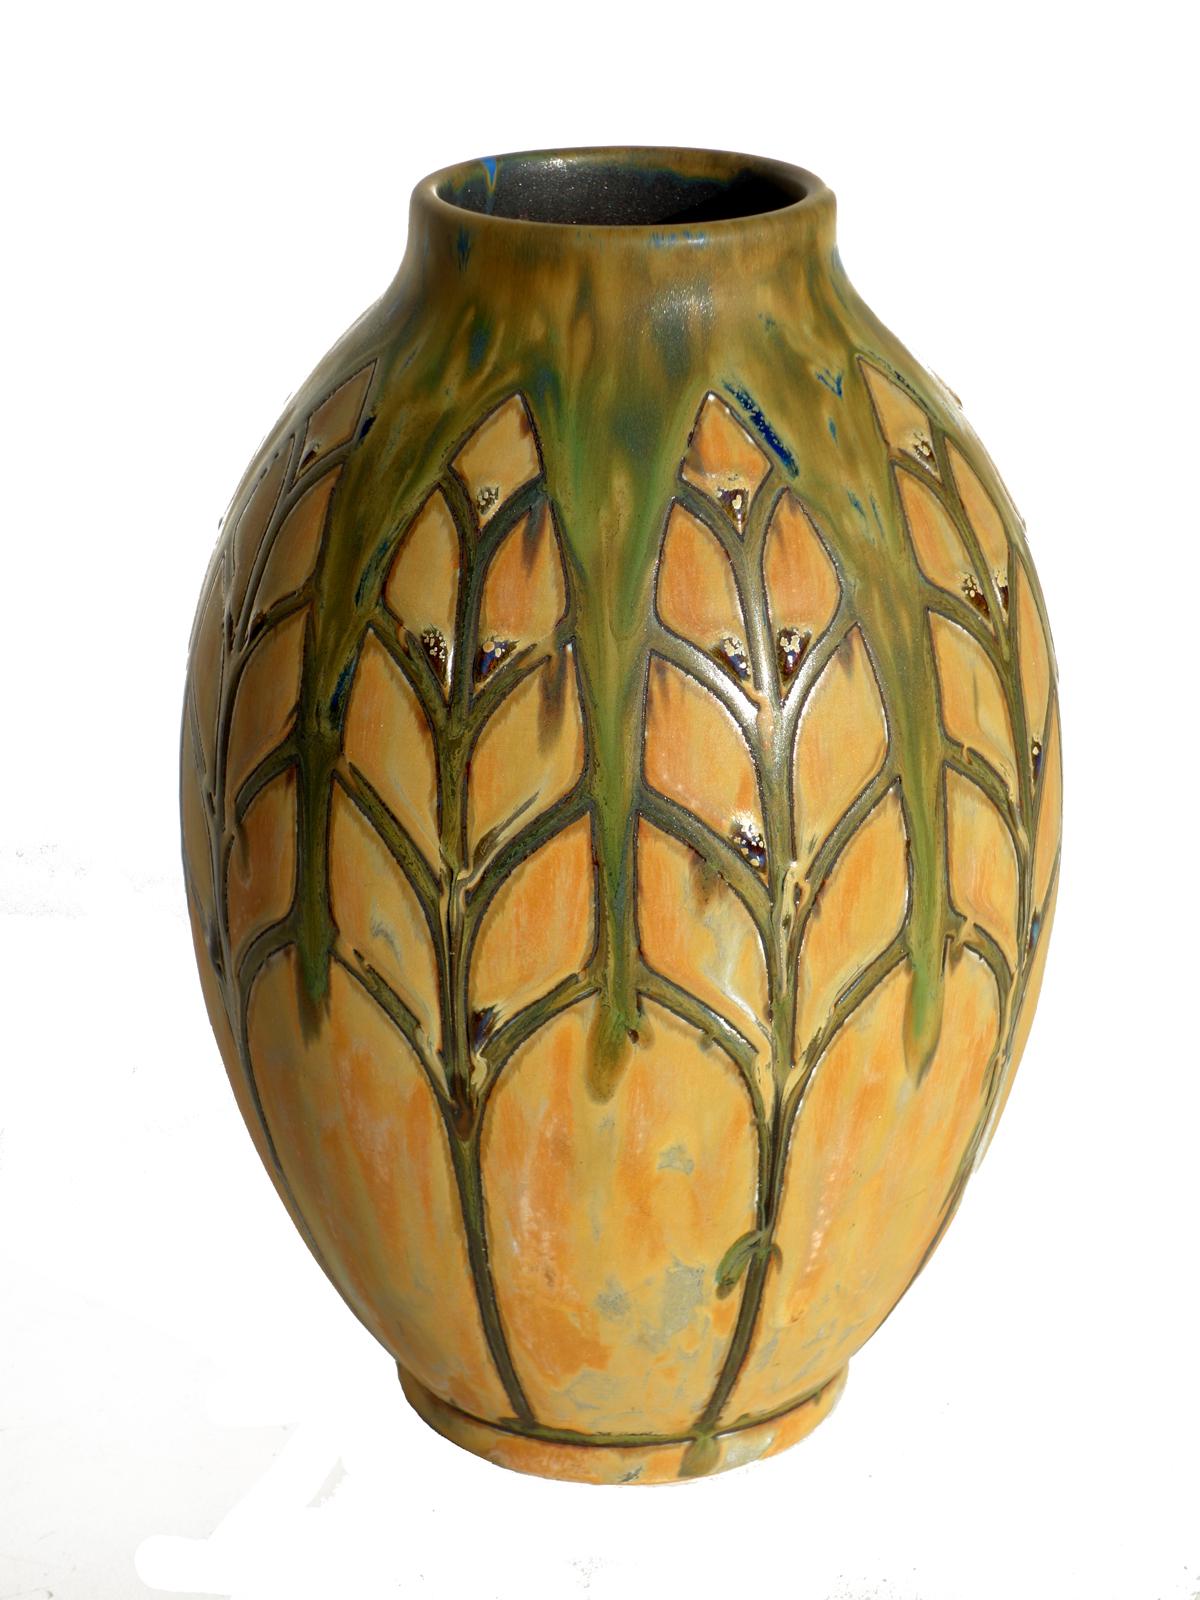 Fine Art Deco vase by Charles Catteau
Boch, La Louvier
Gres Keramis

Glazed ceramic
Excellent condiction.
 